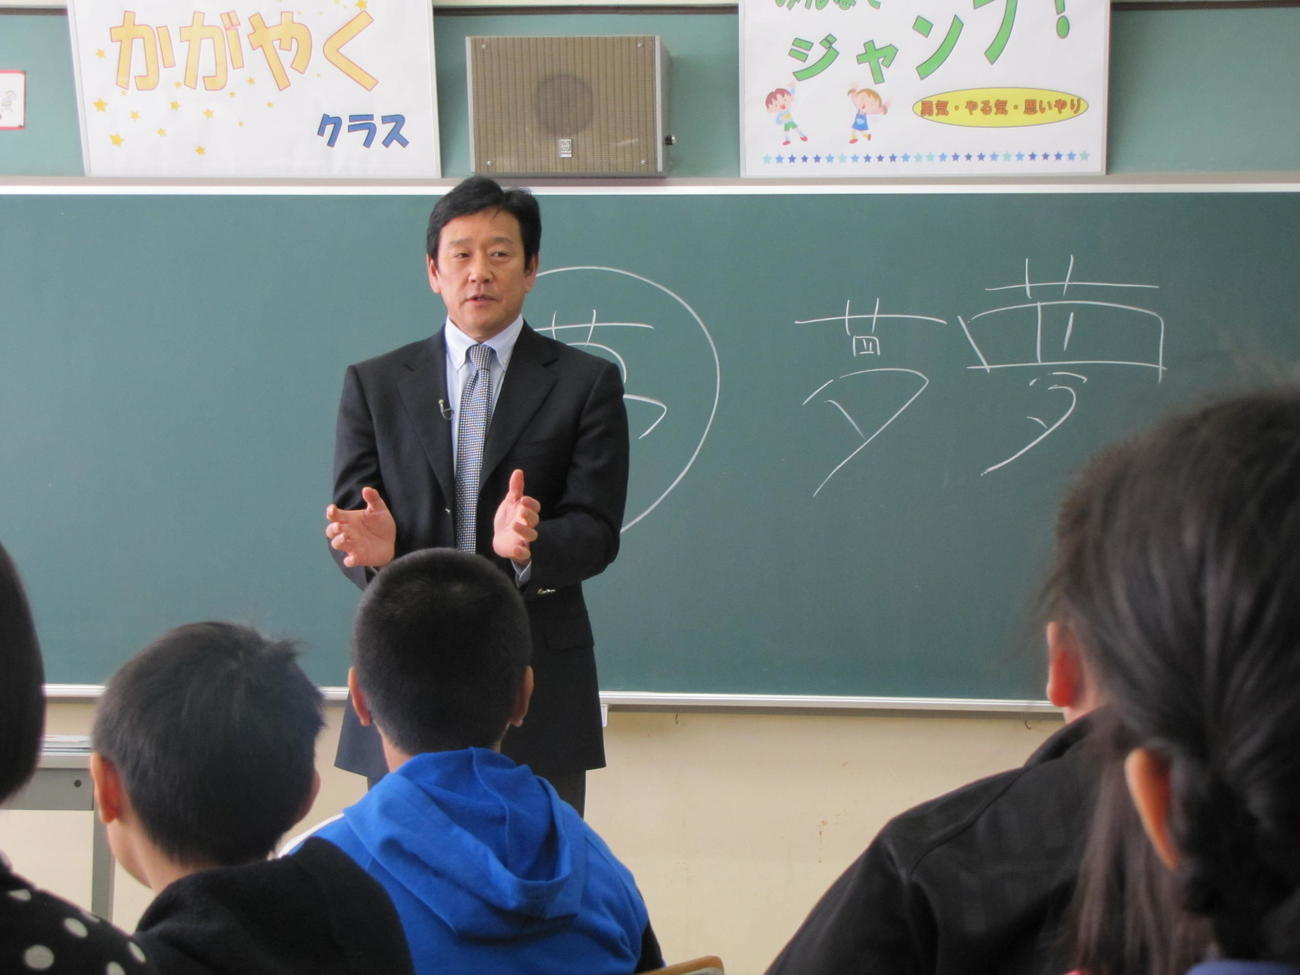 13年12月14日、栗山監督は札幌市内の小学校で特別授業を行う